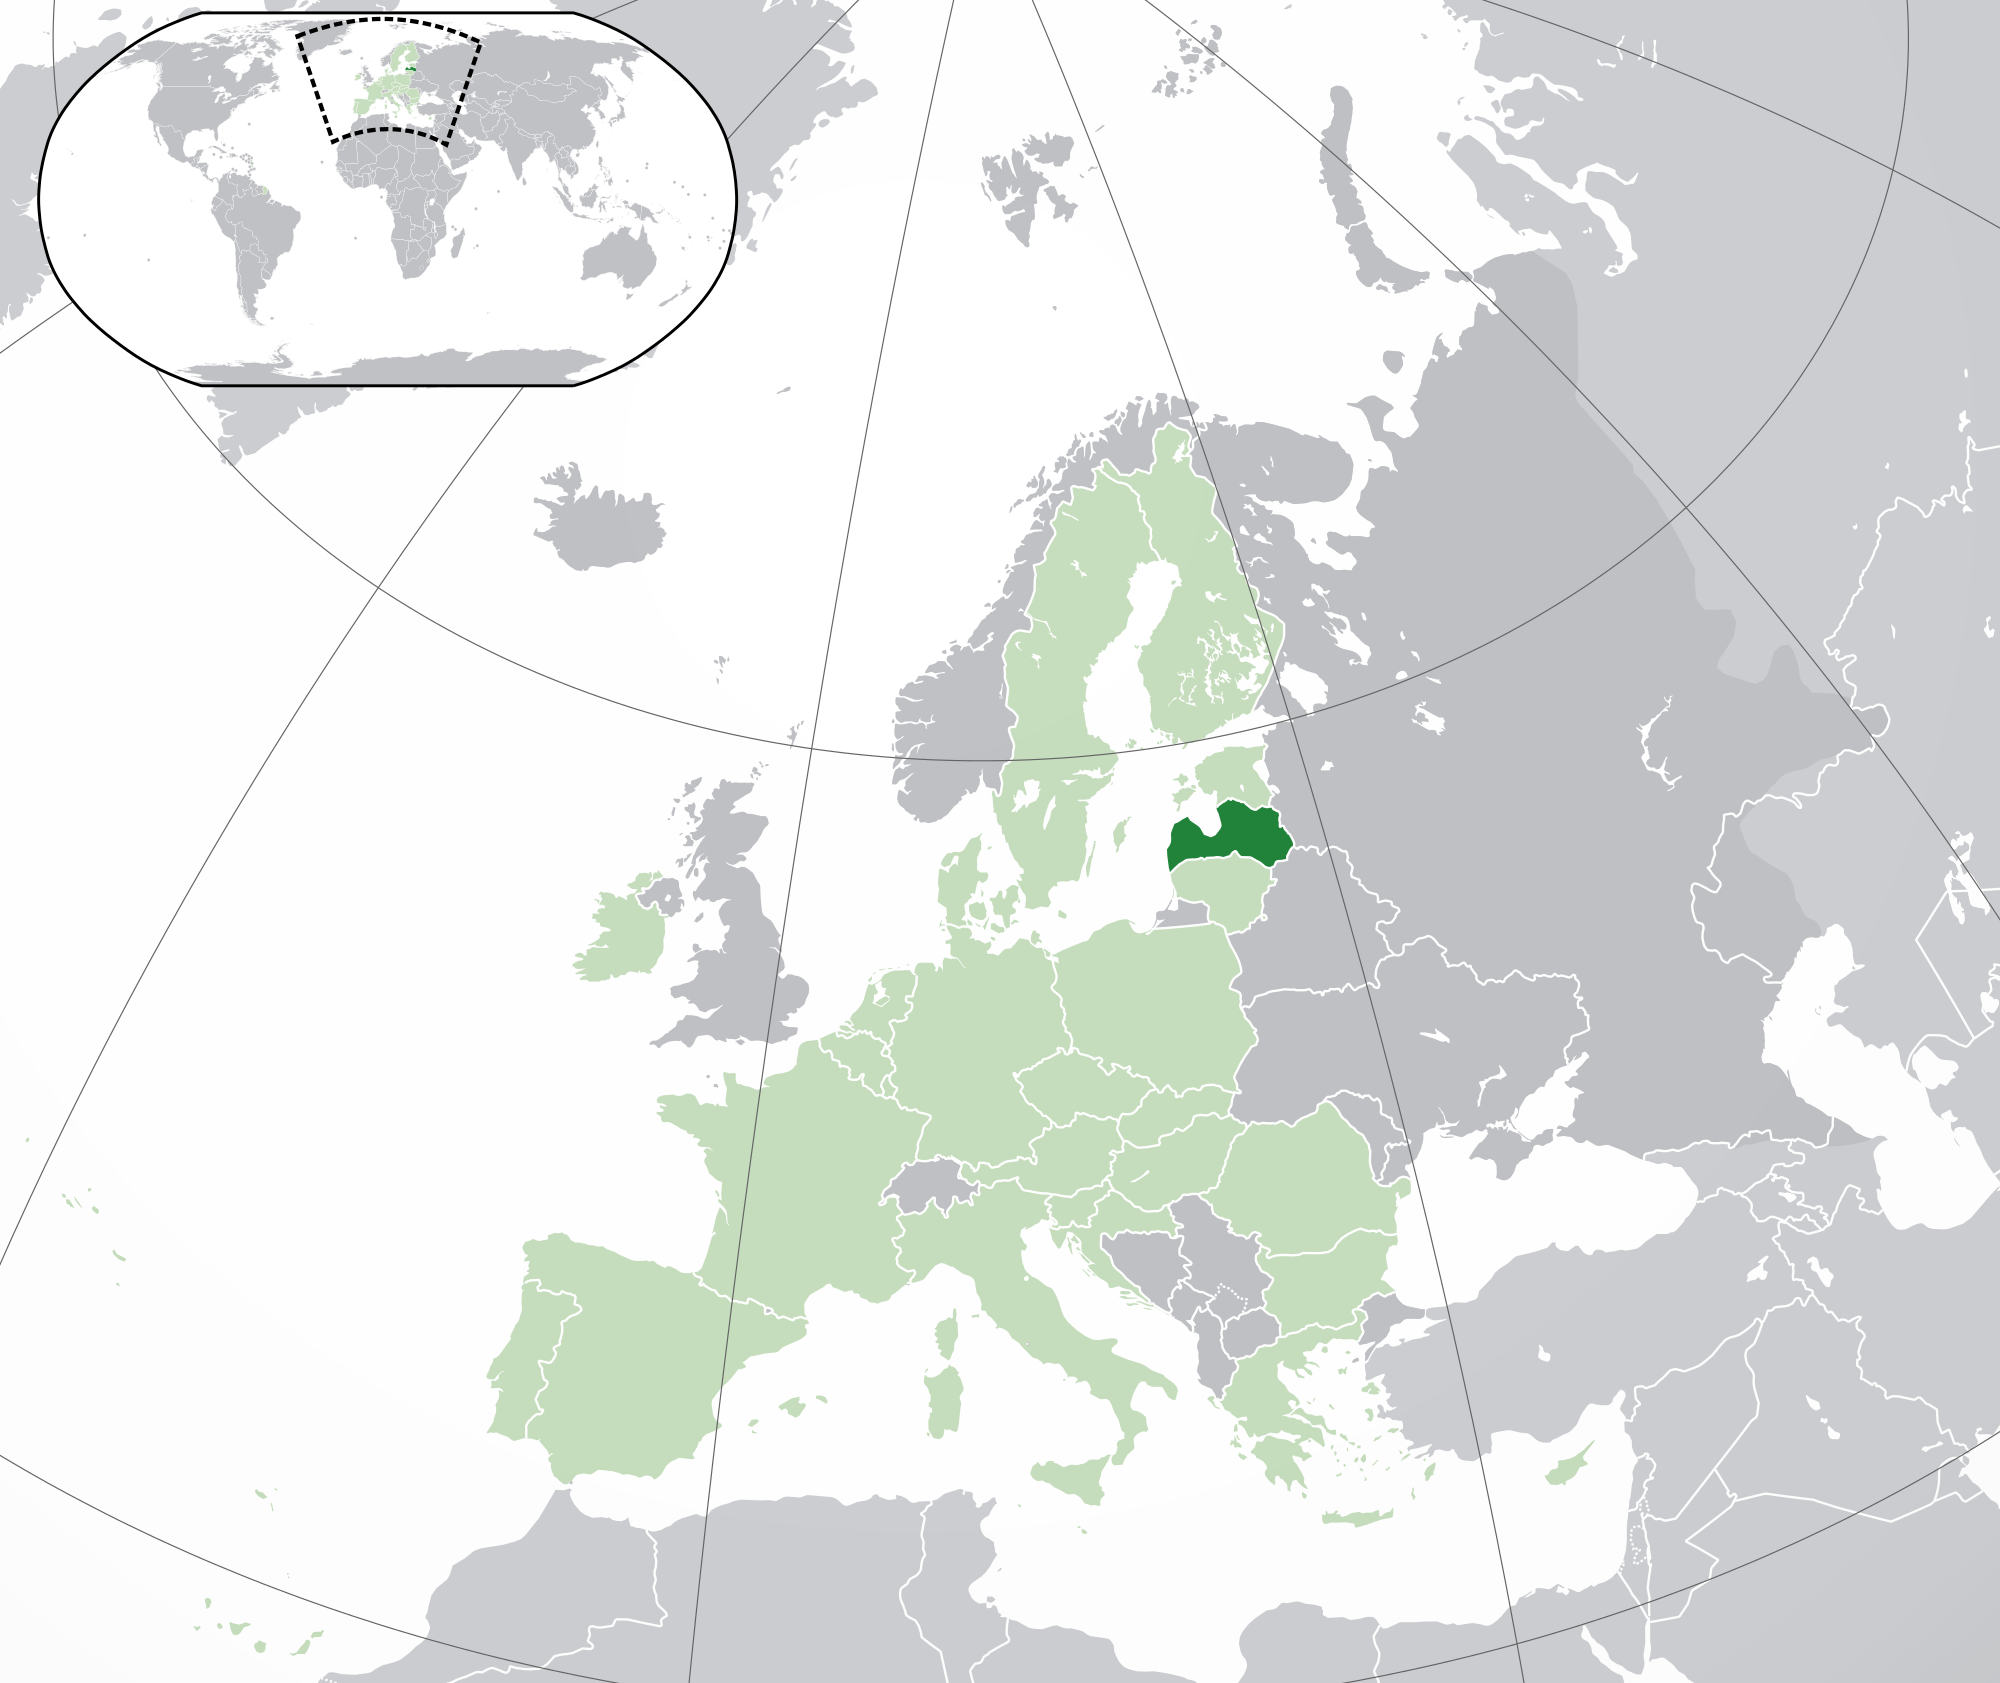 Latvia - Wikipedia, the free encyclopedia